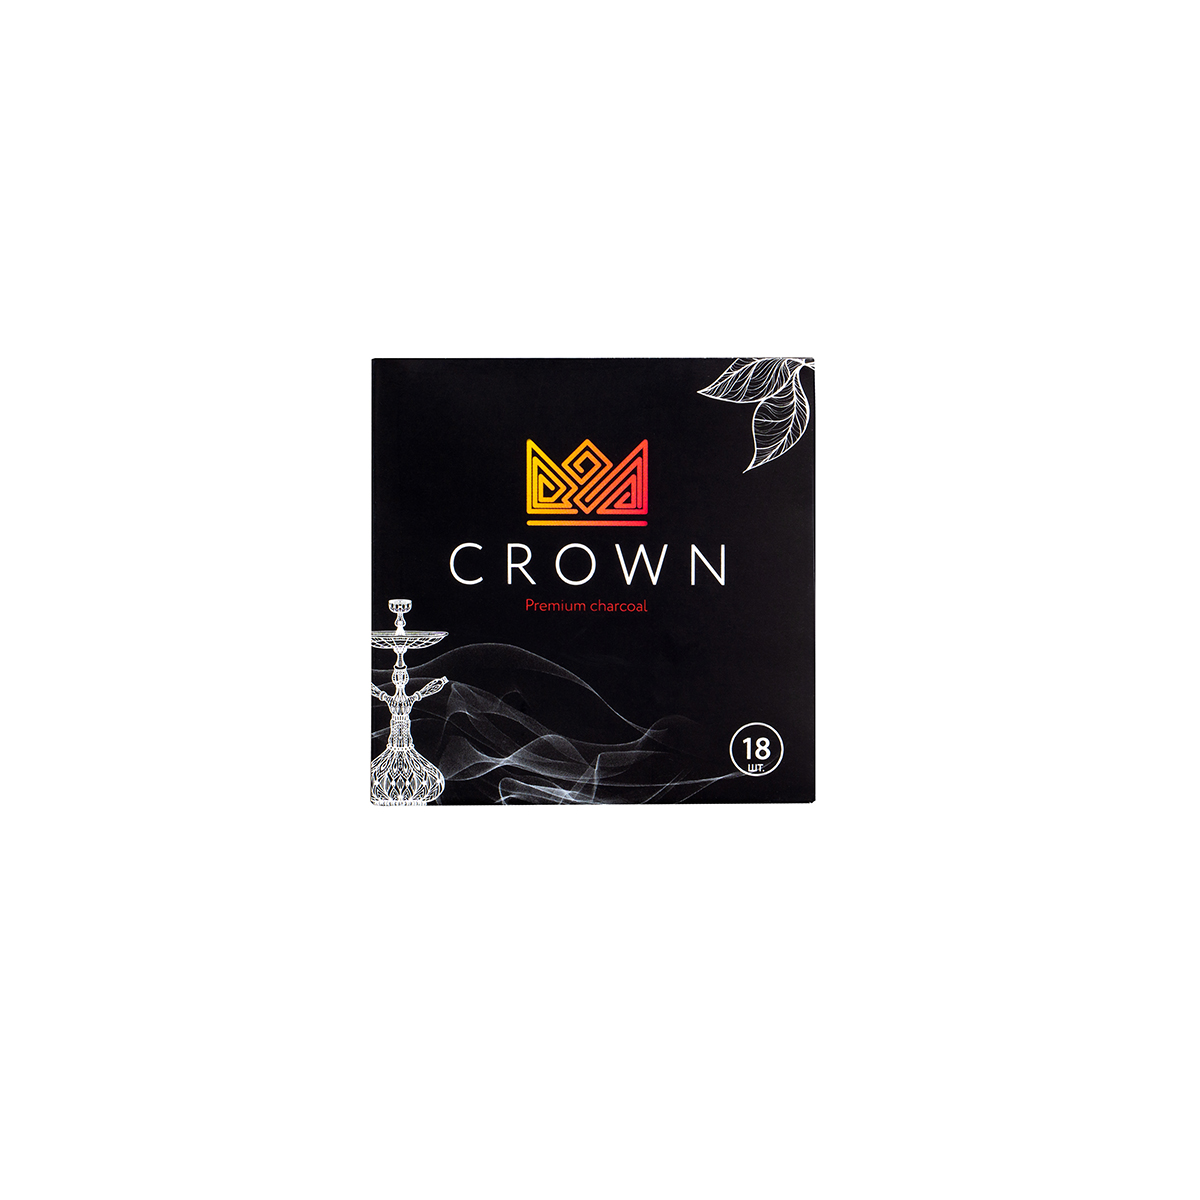 Уголь Crown кокосовый 18 шт (25 мм)